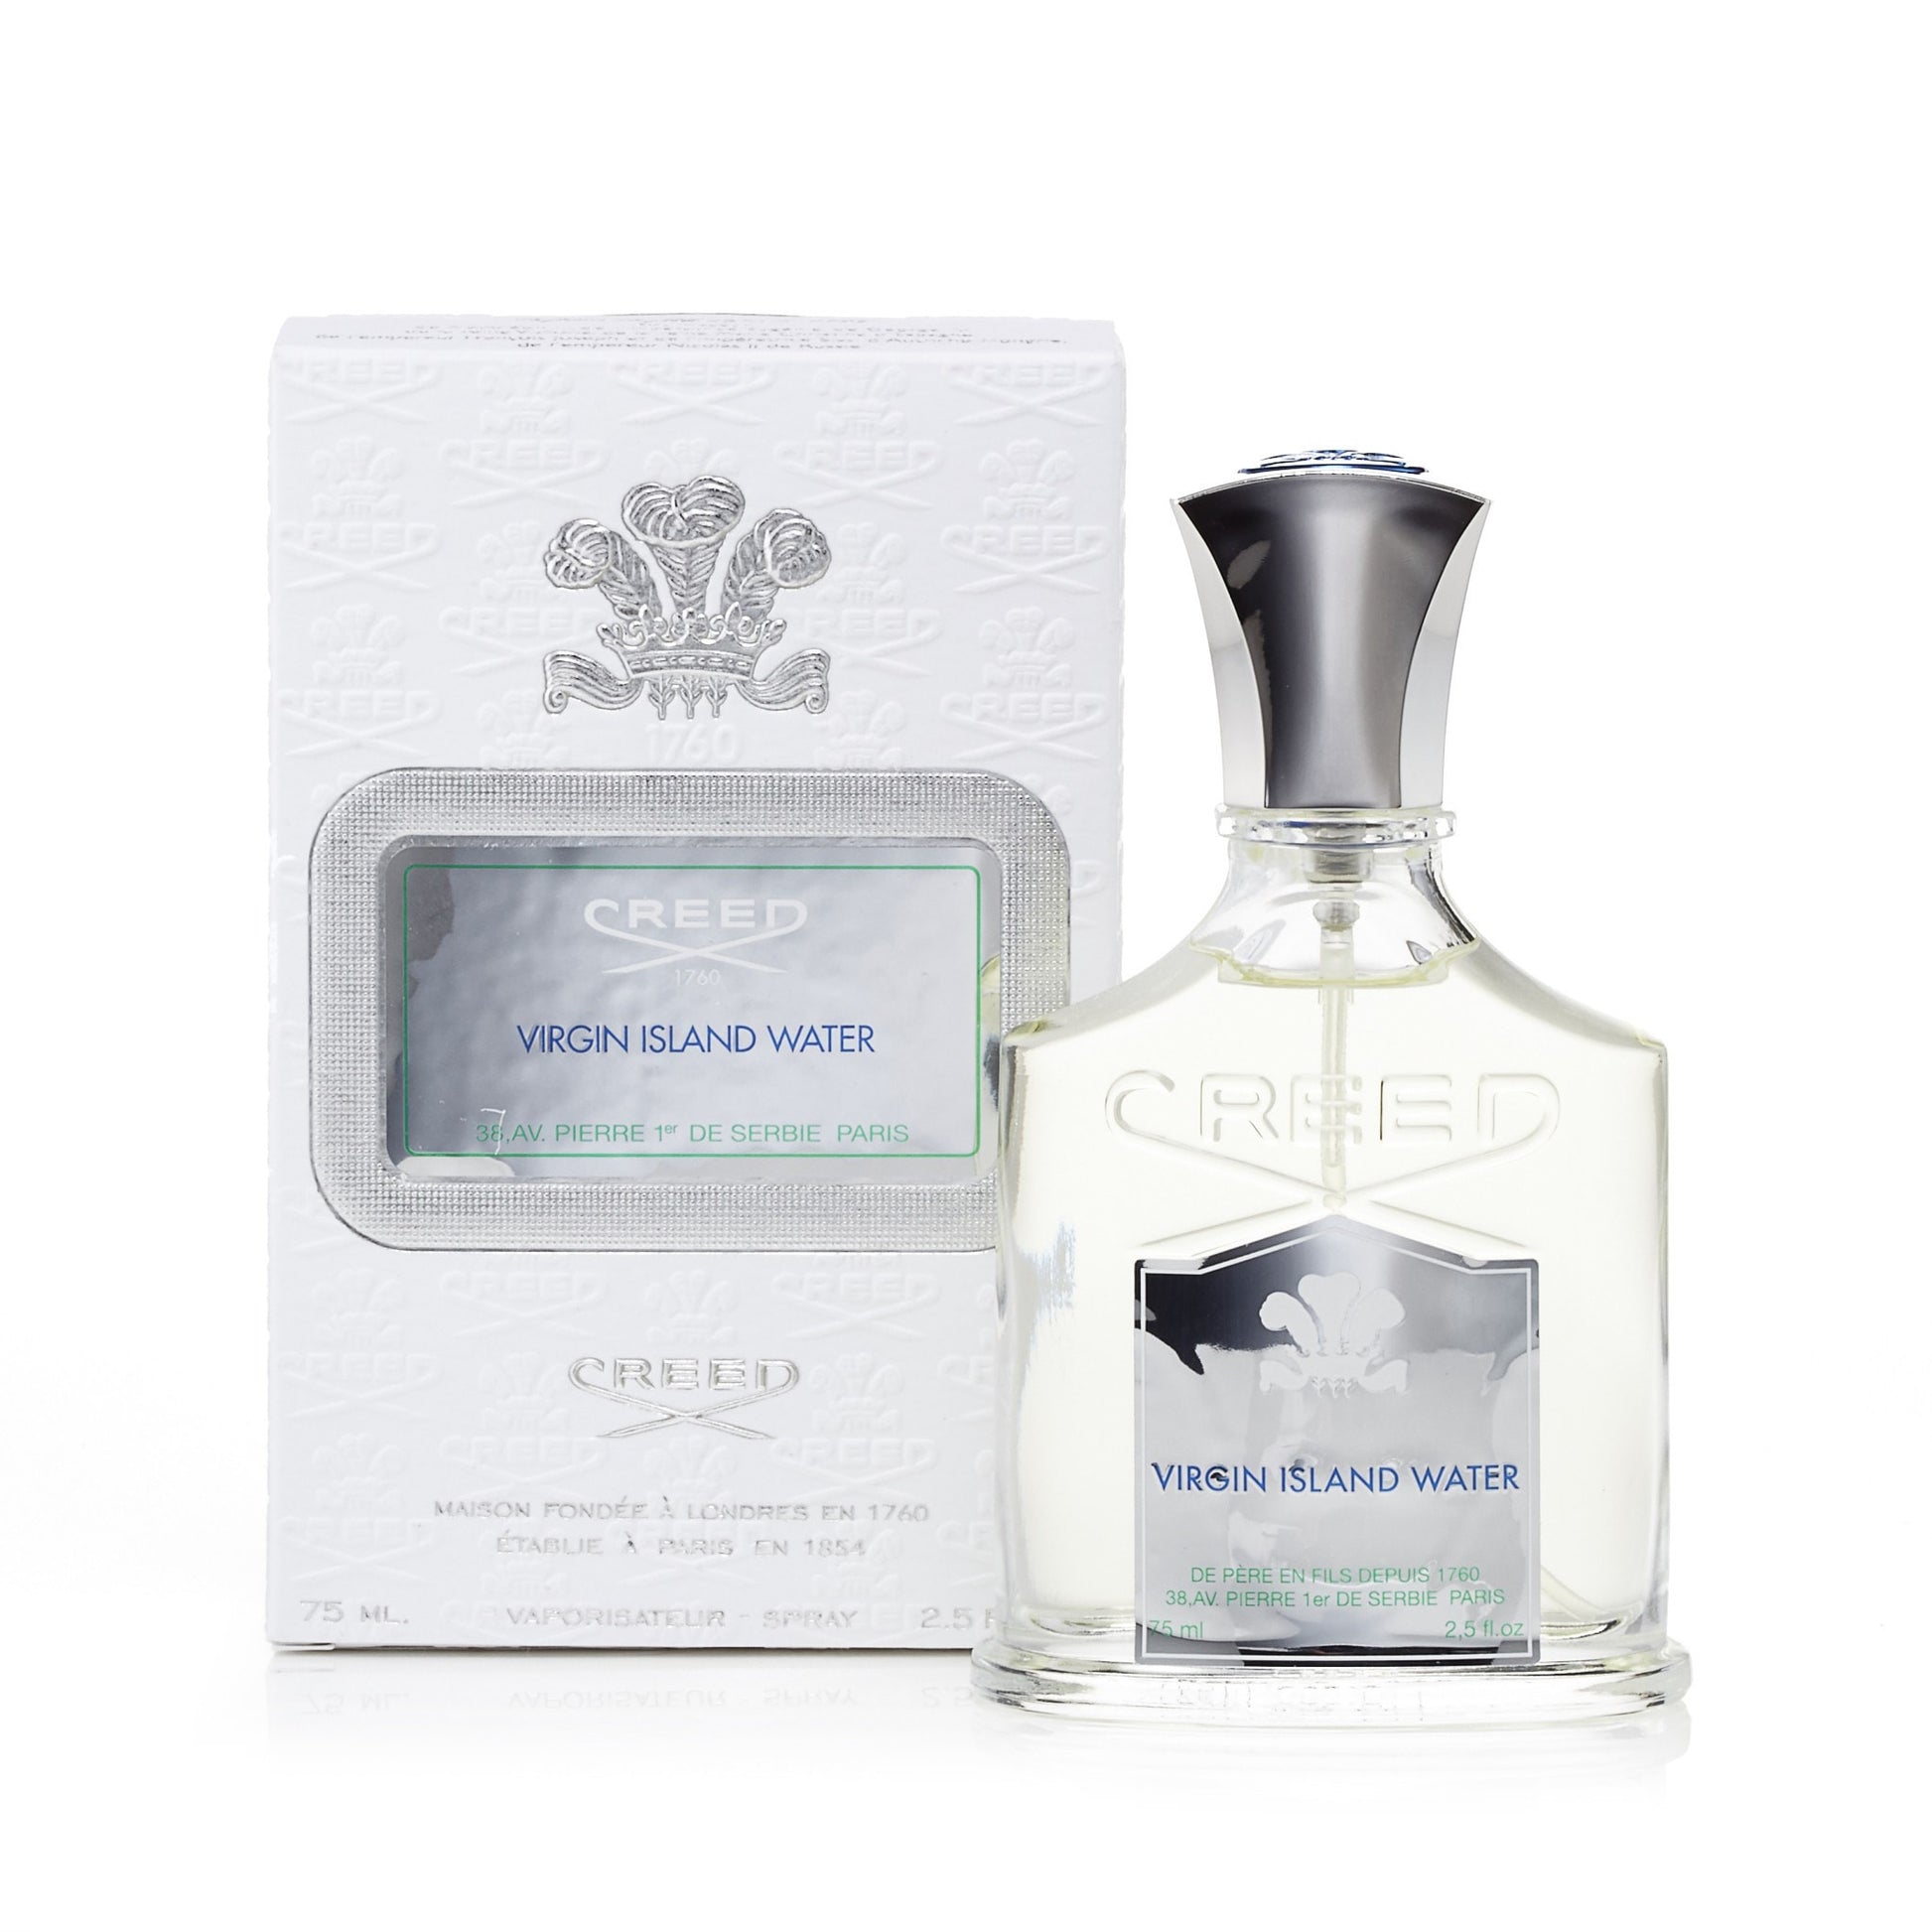  Virgin Island Water Eau de Parfum Spray for Men by Creed 2.5 oz. Click to open in modal